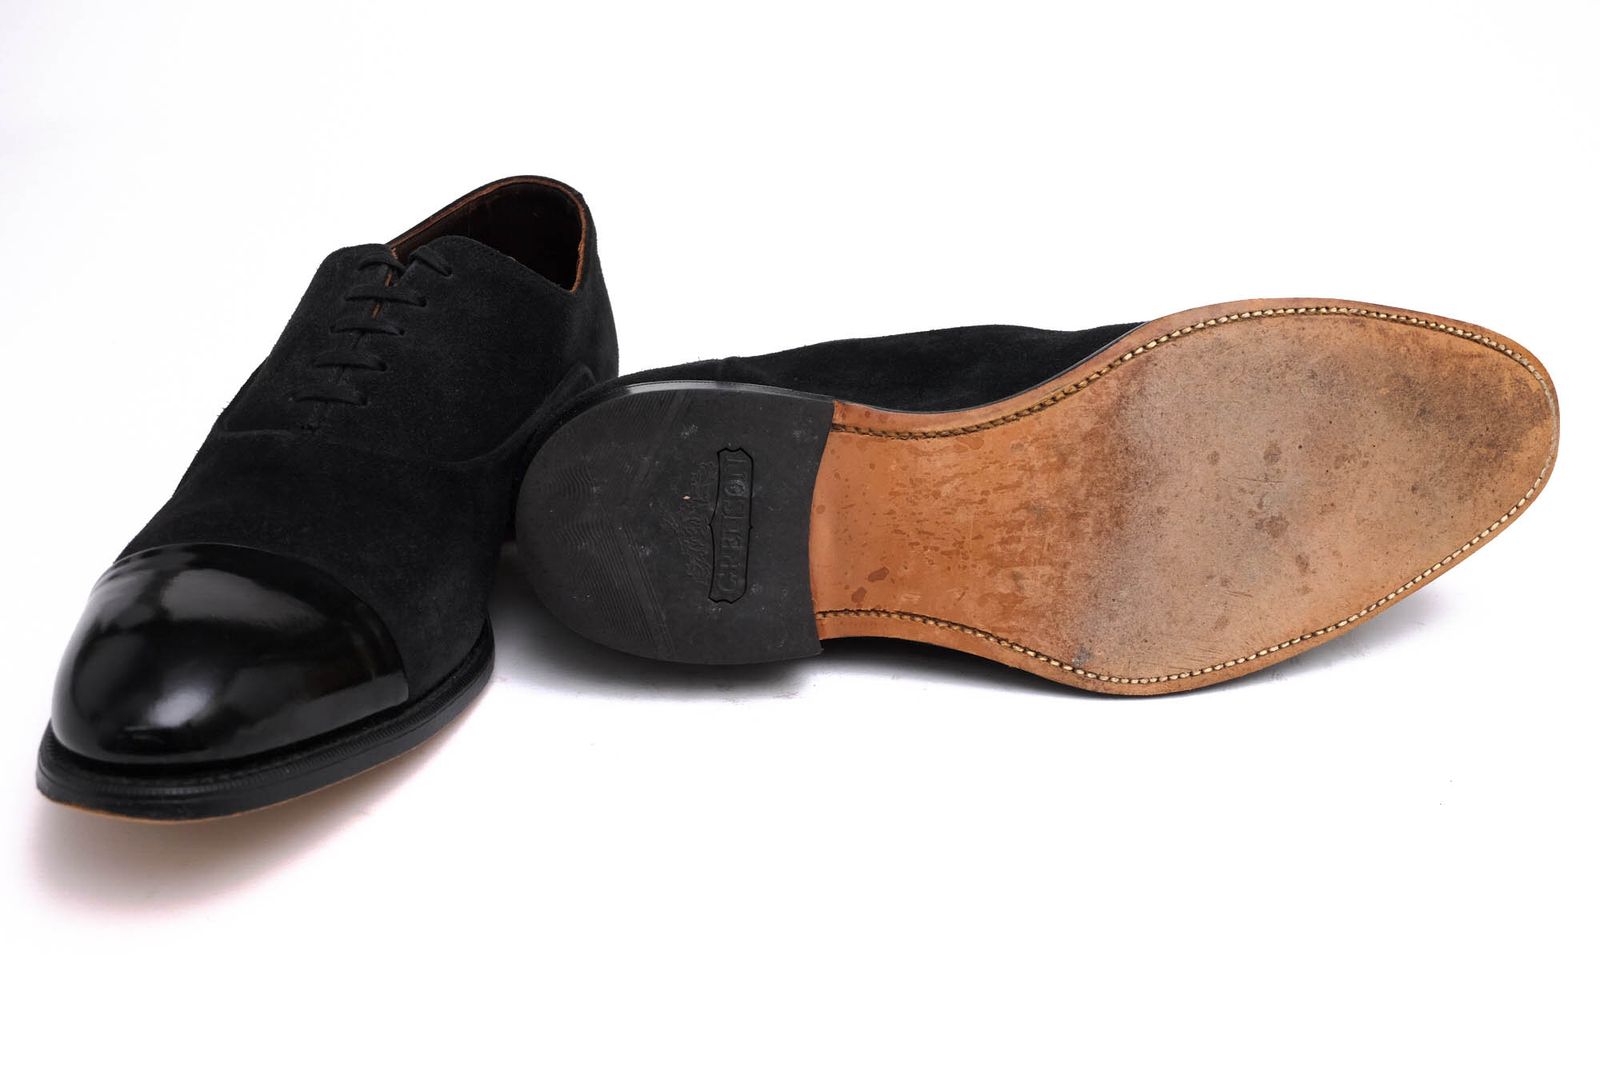 グレンソン／GRENSON シューズ ビジネスシューズ 靴 ビジネス メンズ 男性 男性用スエード スウェード レザー 革 本革 ブラック 黒  34688/5459 ストレートチップ レザーソール グッドイヤーウェルト製法